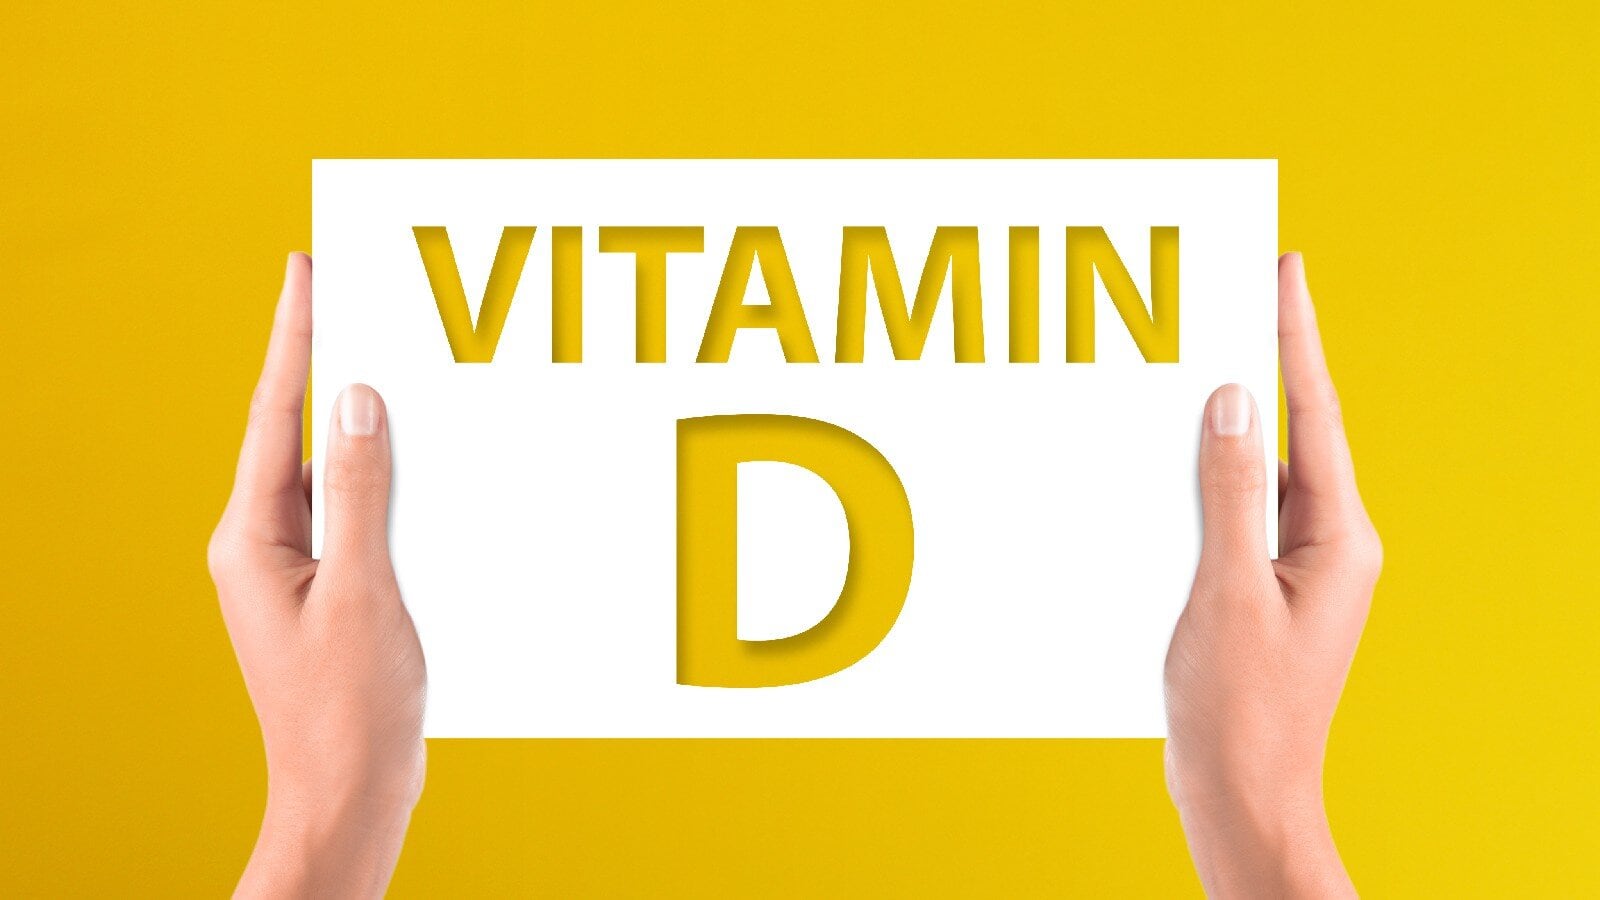 जानिए आपके शरीर को विटामिन डी की आवश्यकता क्यों है